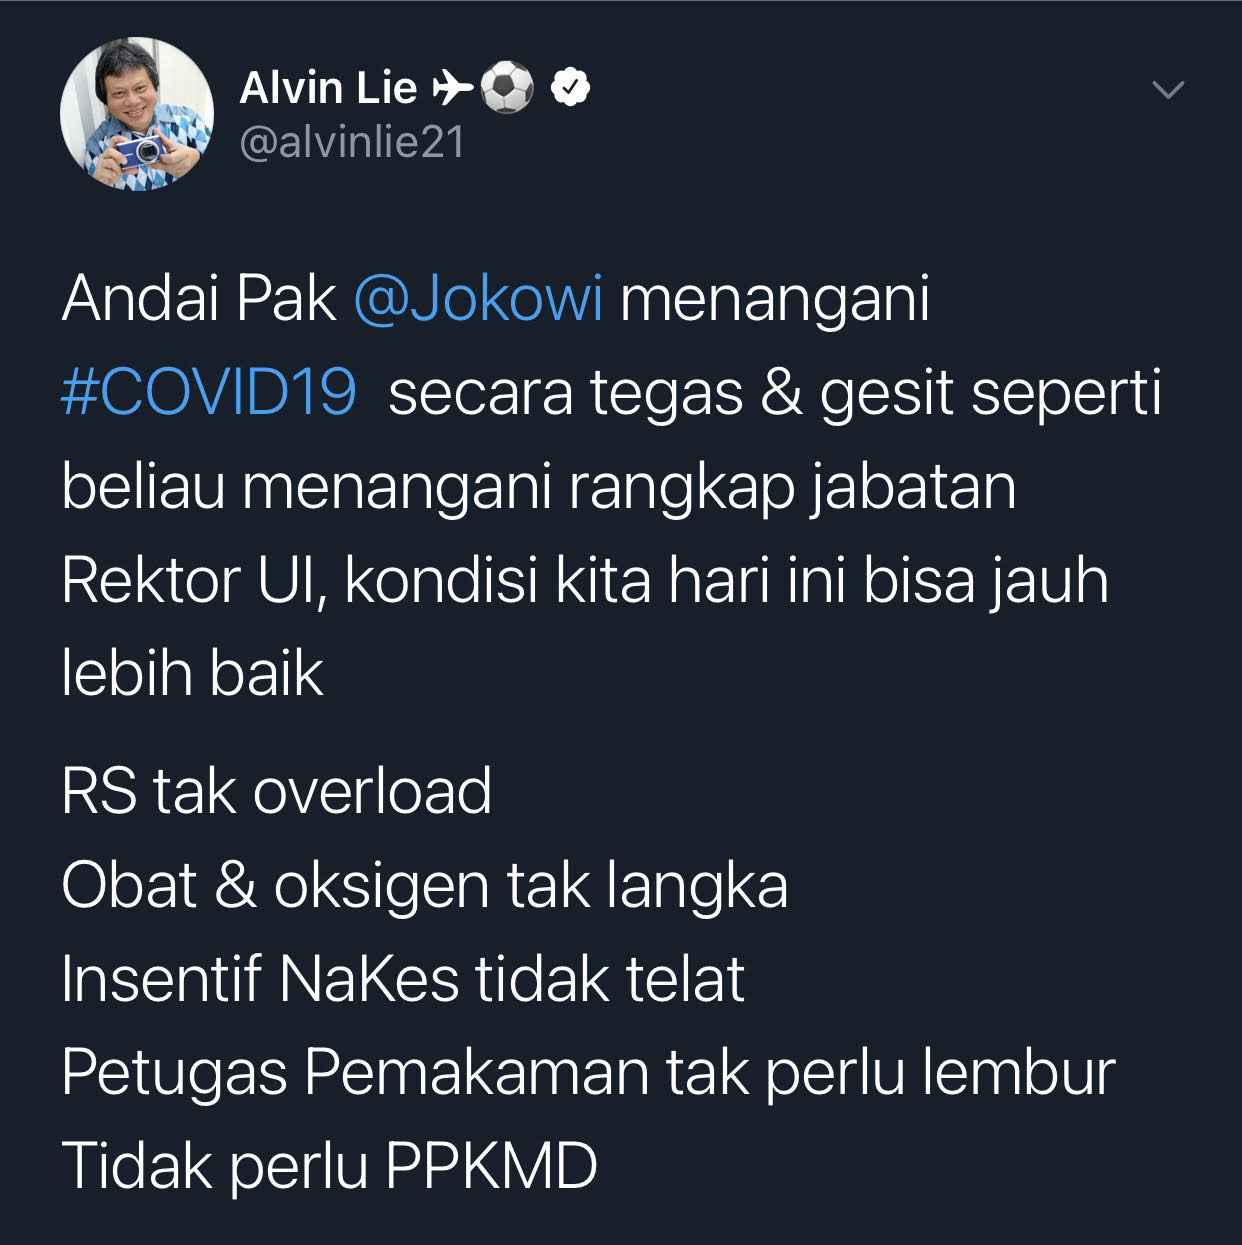 Alvin Lie berandai jika Presiden Jokowi bisa gesit dan tegas dalam menangani Covid-19 seperti menangani rangkap jabatan Rektor UI.